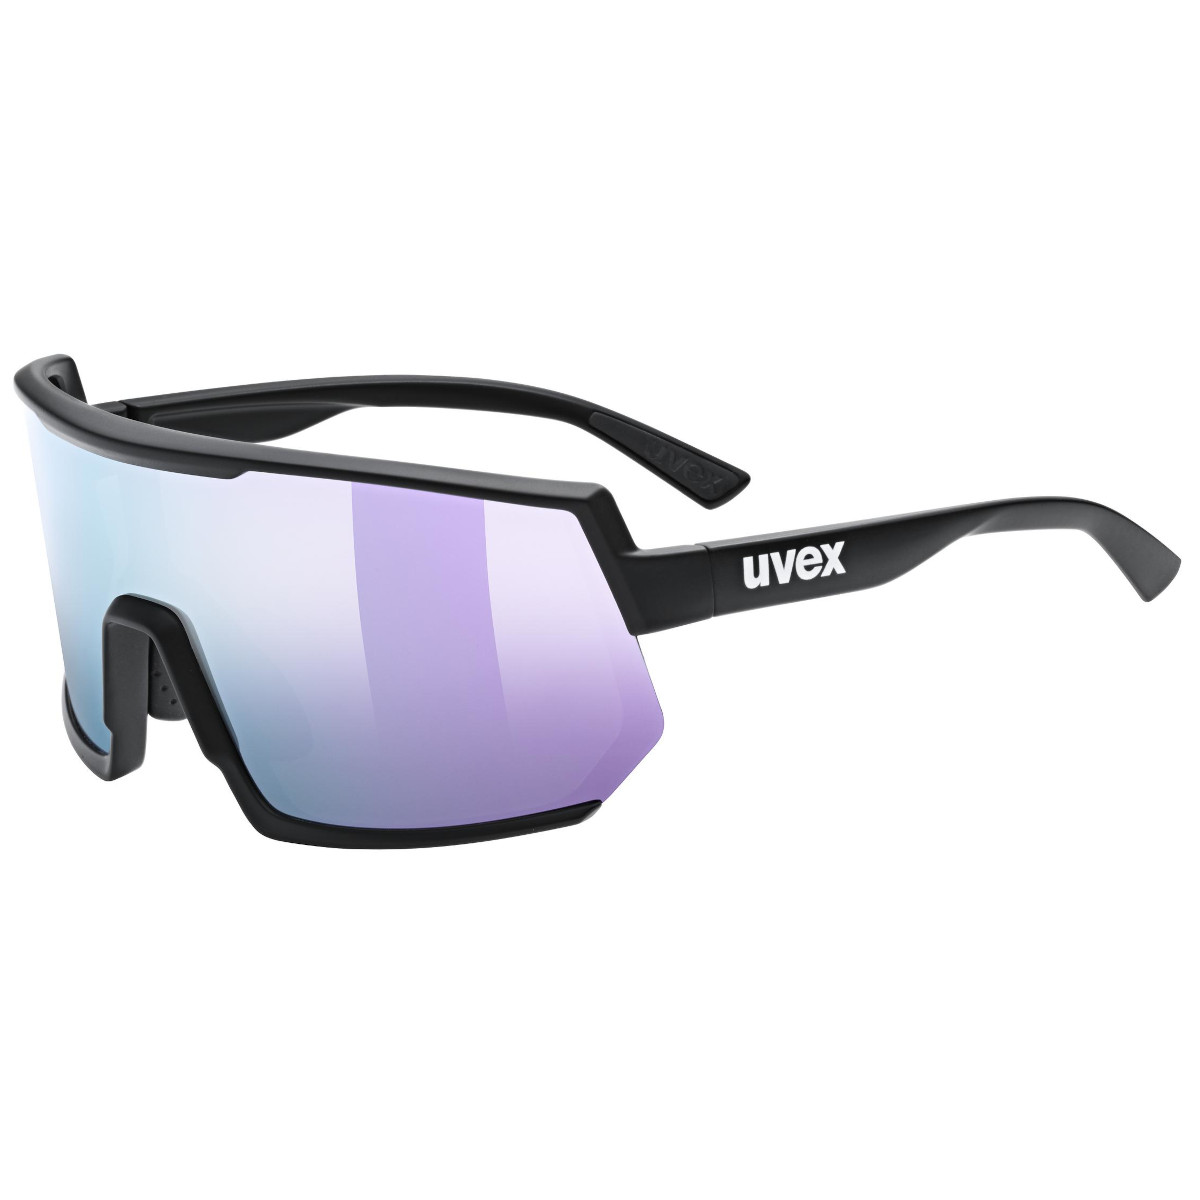 Produktbild von Uvex sportstyle 235 Brille - black matt/mirror lavender